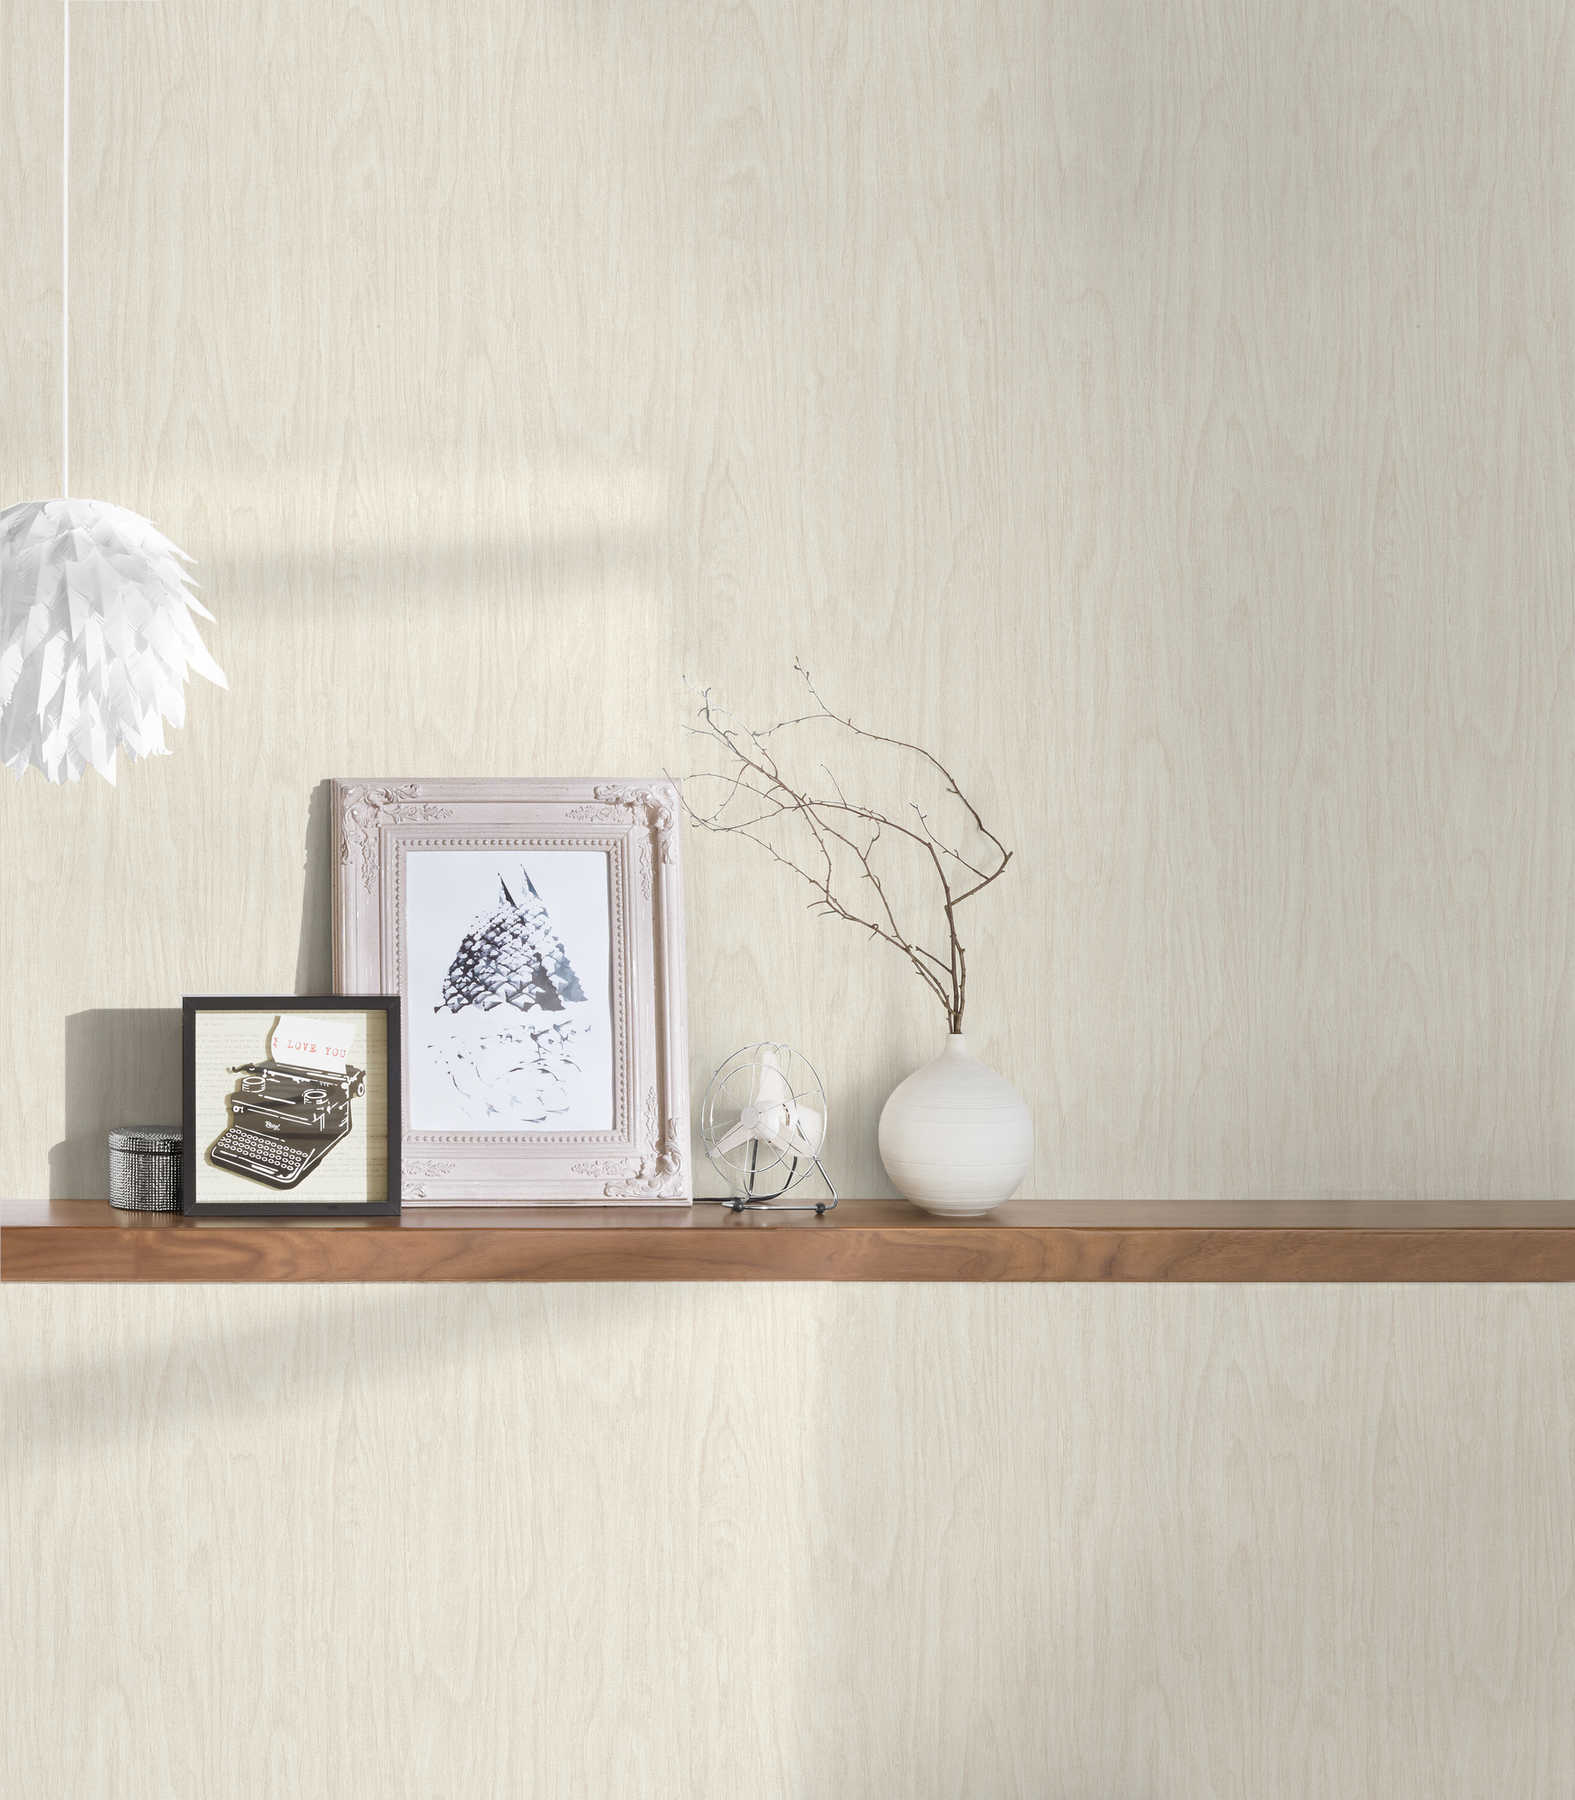             Bright VERSACE Home wallpaper in wood look - beige, cream
        